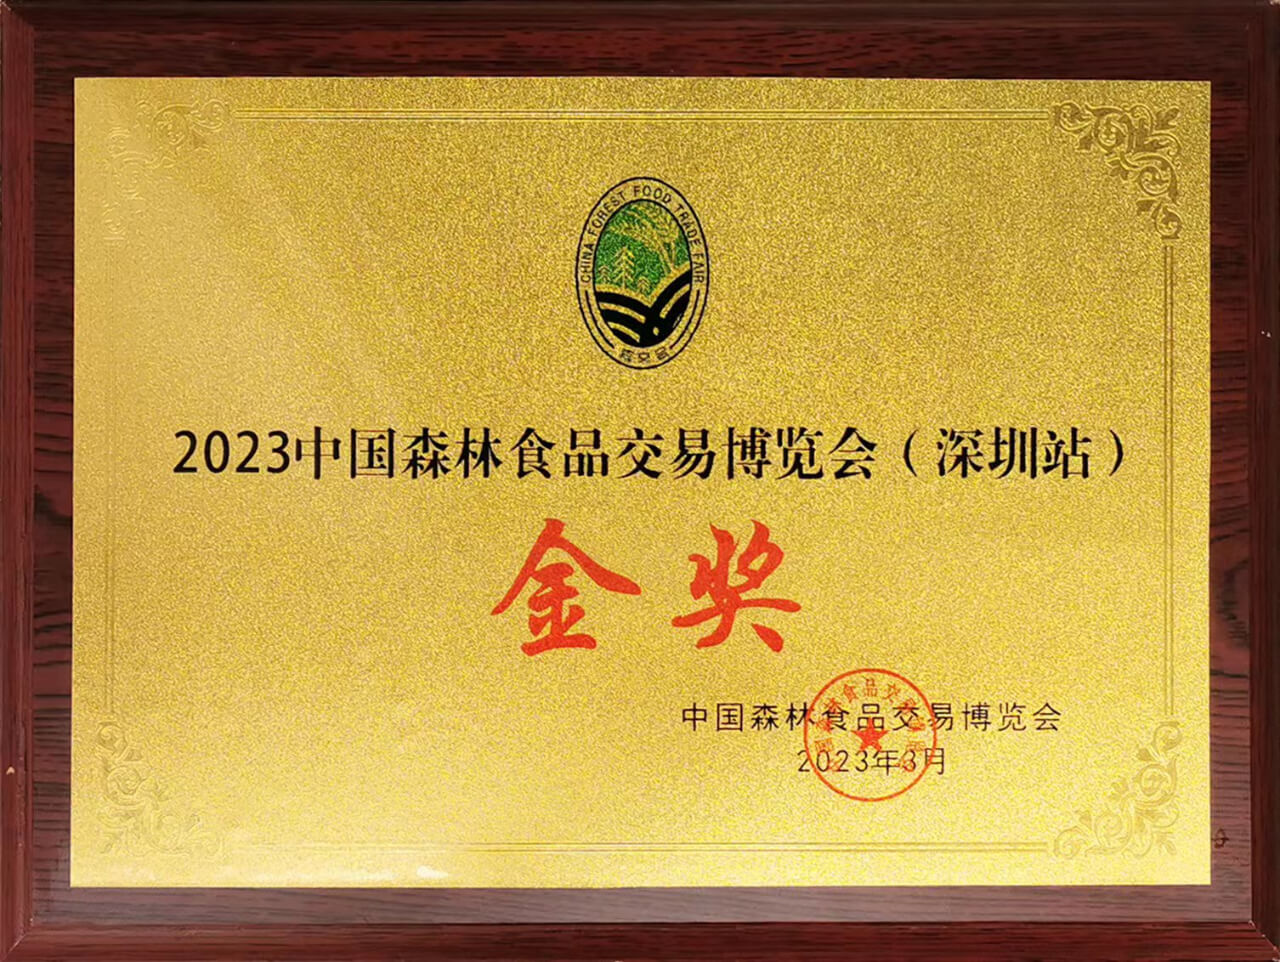 戈寶紅麻茶獲2023中國森林食品交易博覽會金獎